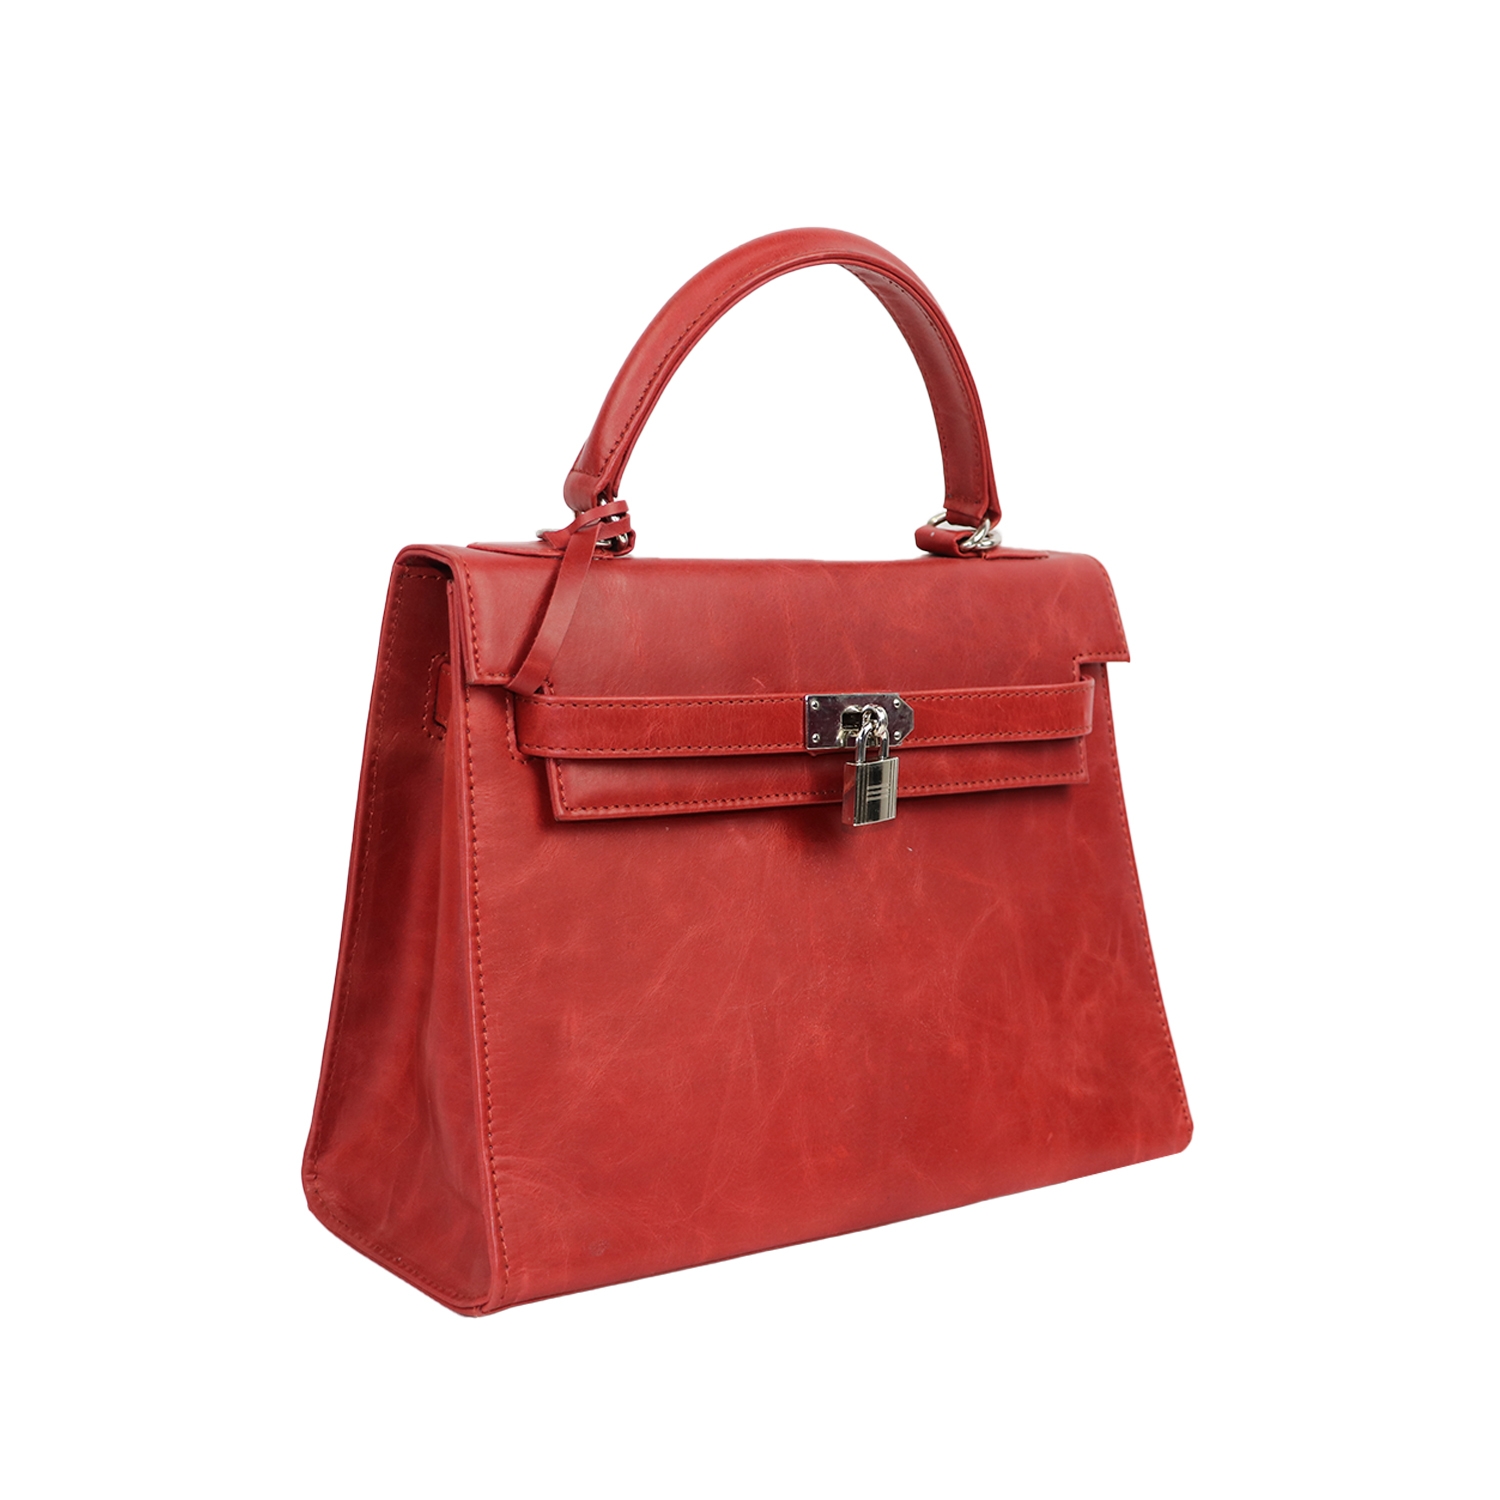 Designer red cute handbag with unique lock